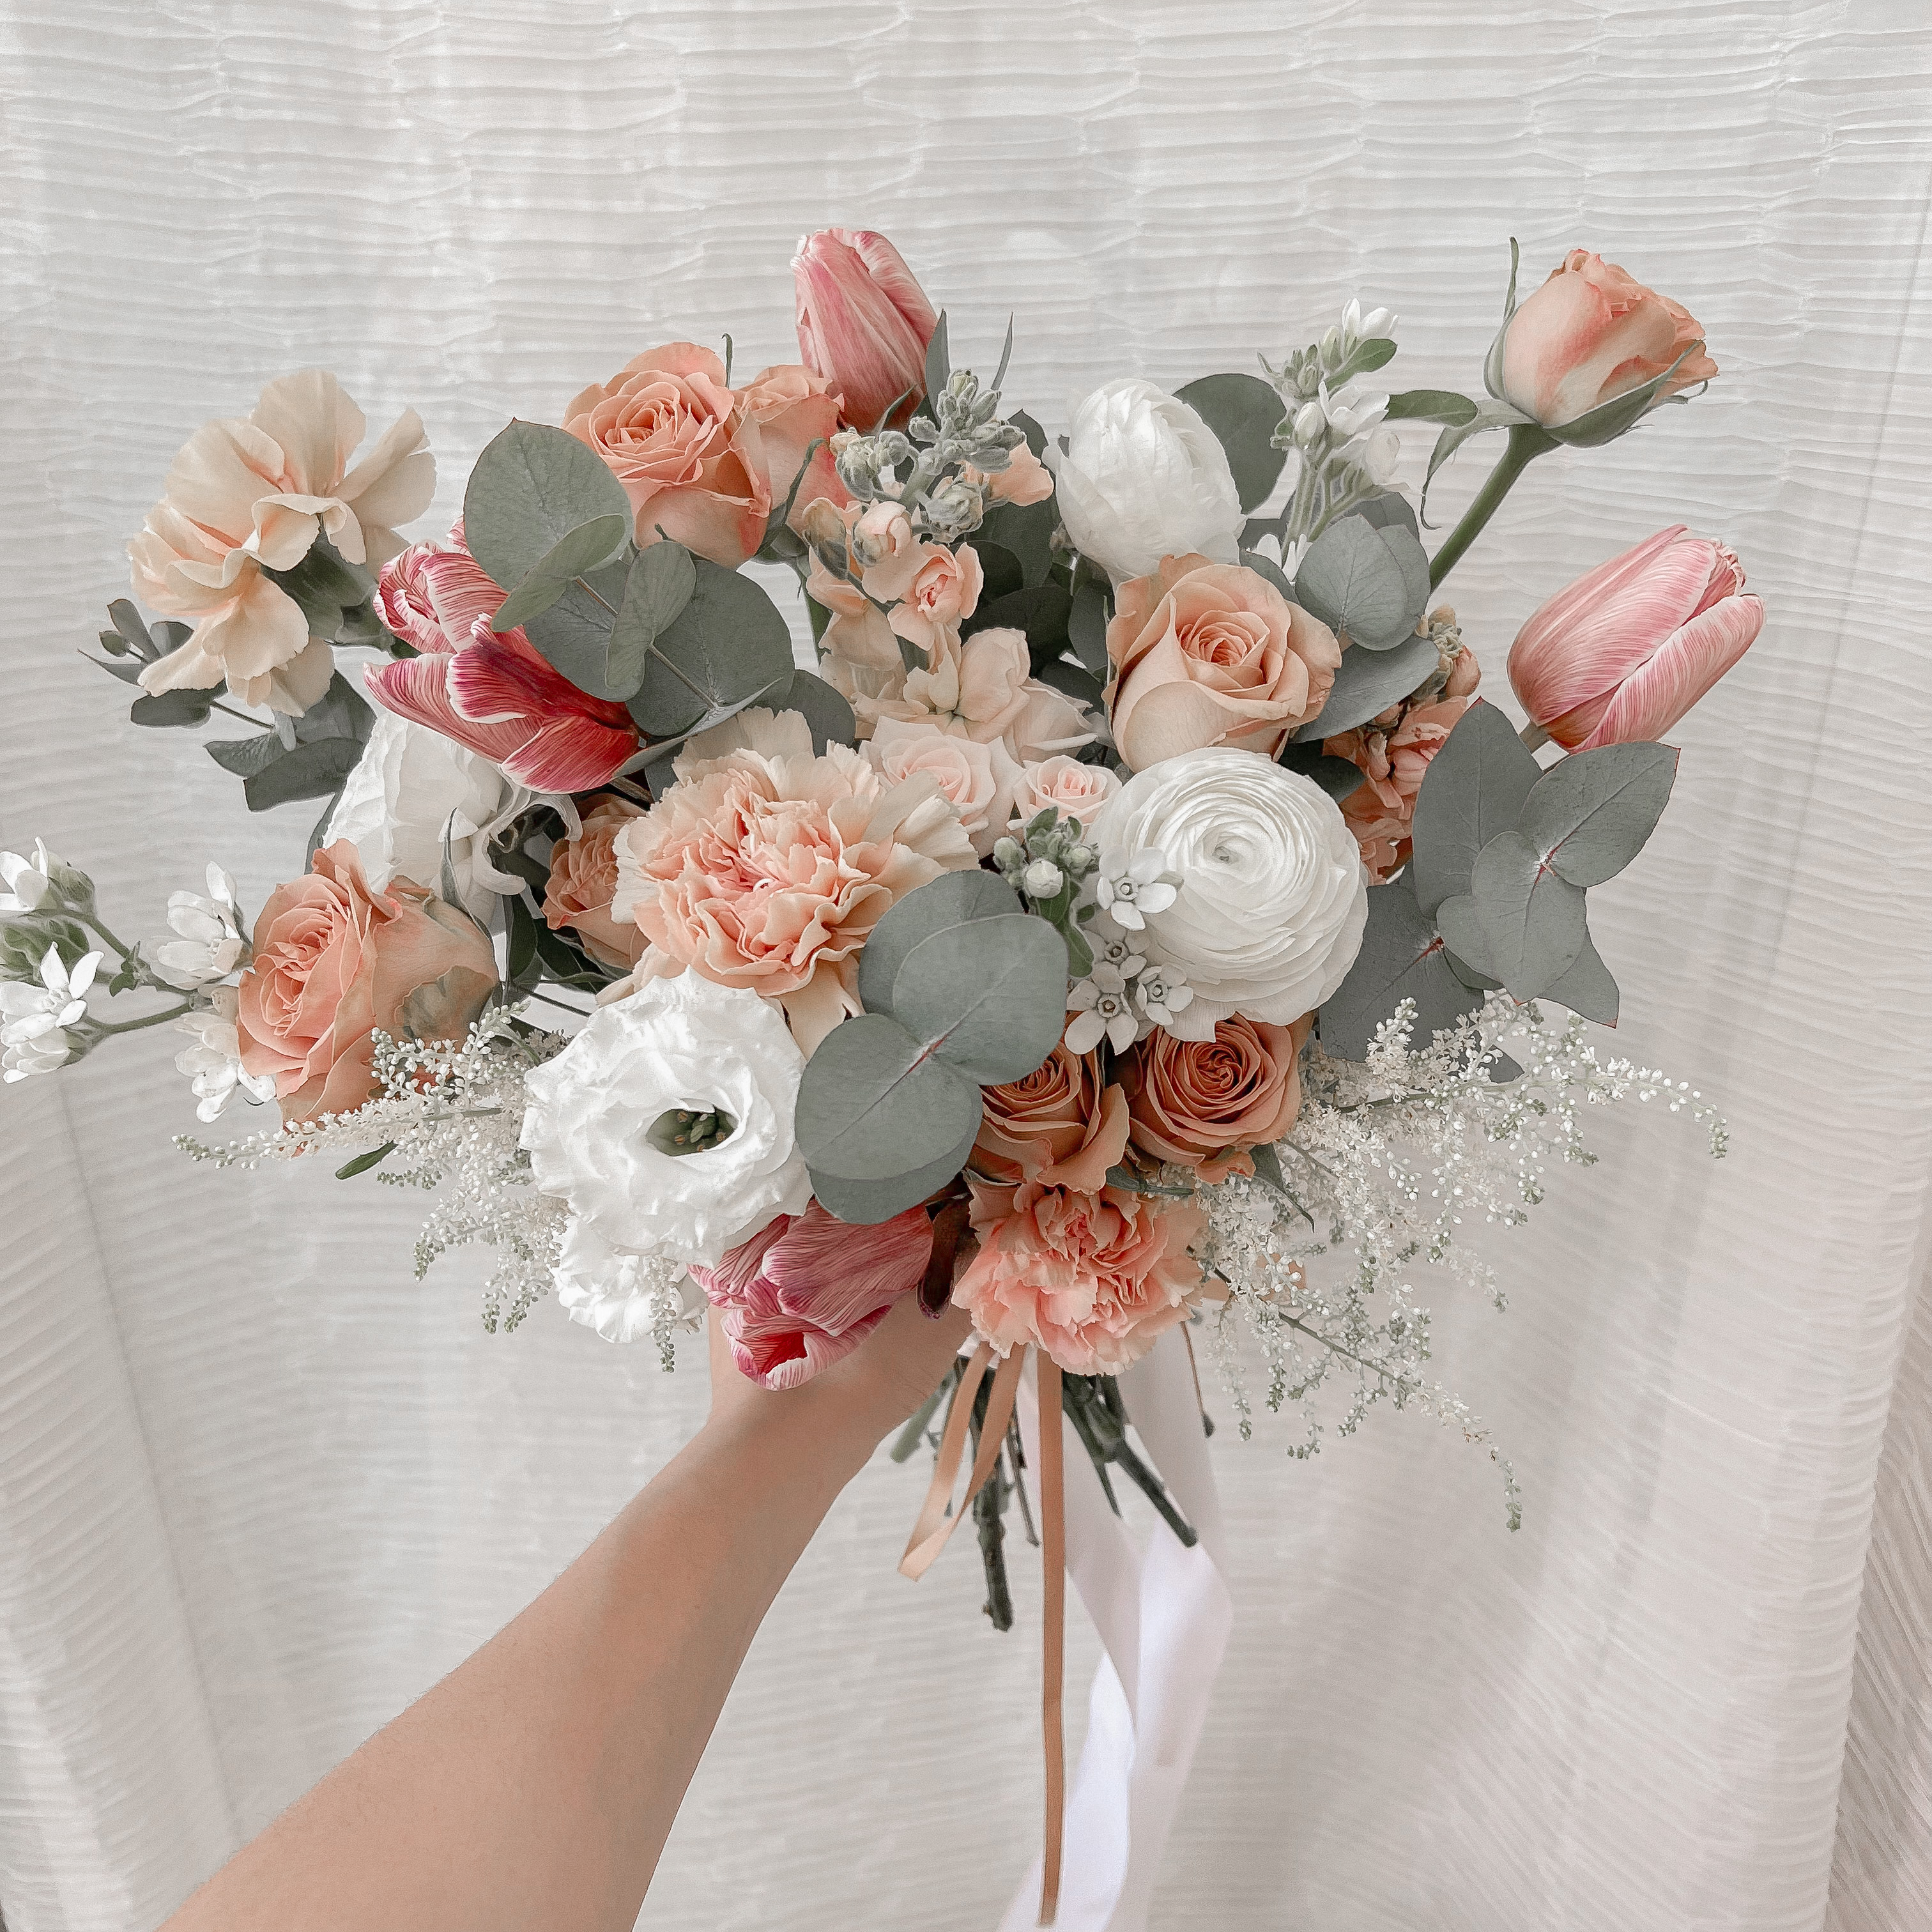 Rustic Wide Premium Customised Bridal Bouquet